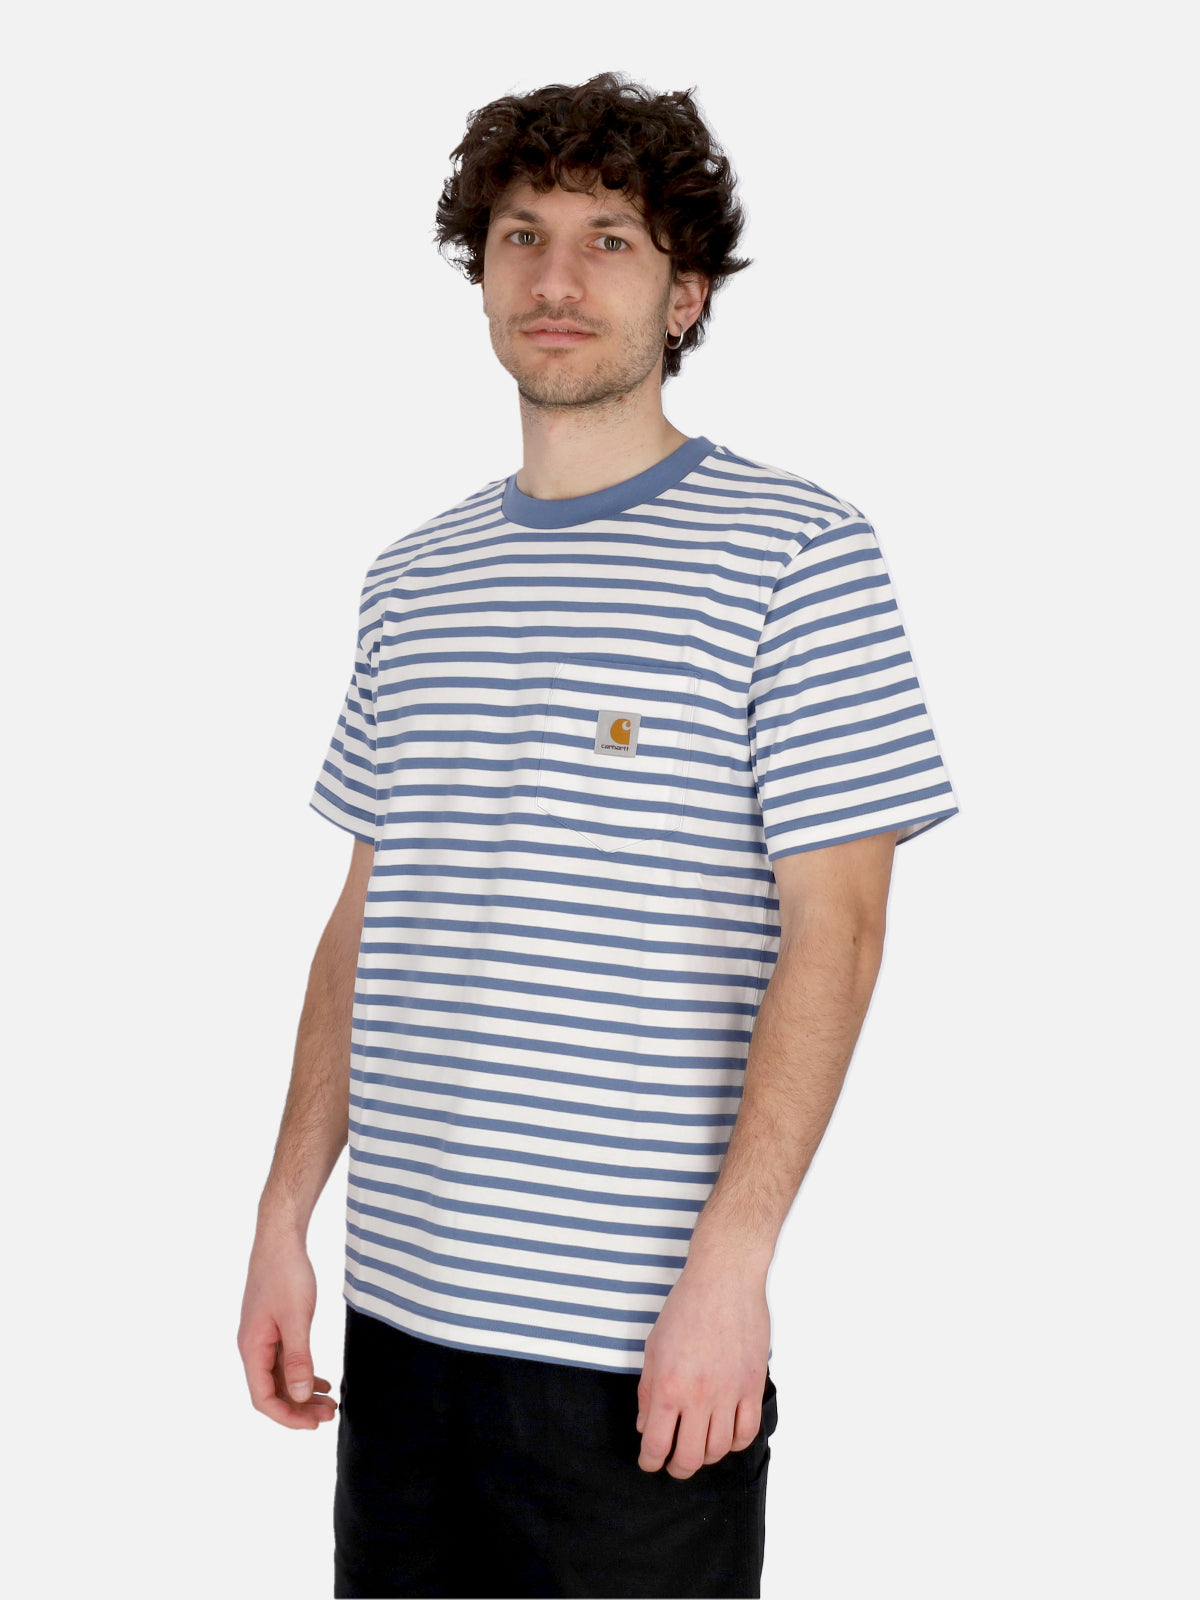 Seidler Pocket Tee Men's T-Shirt Seidler Stripe/sorrent/white